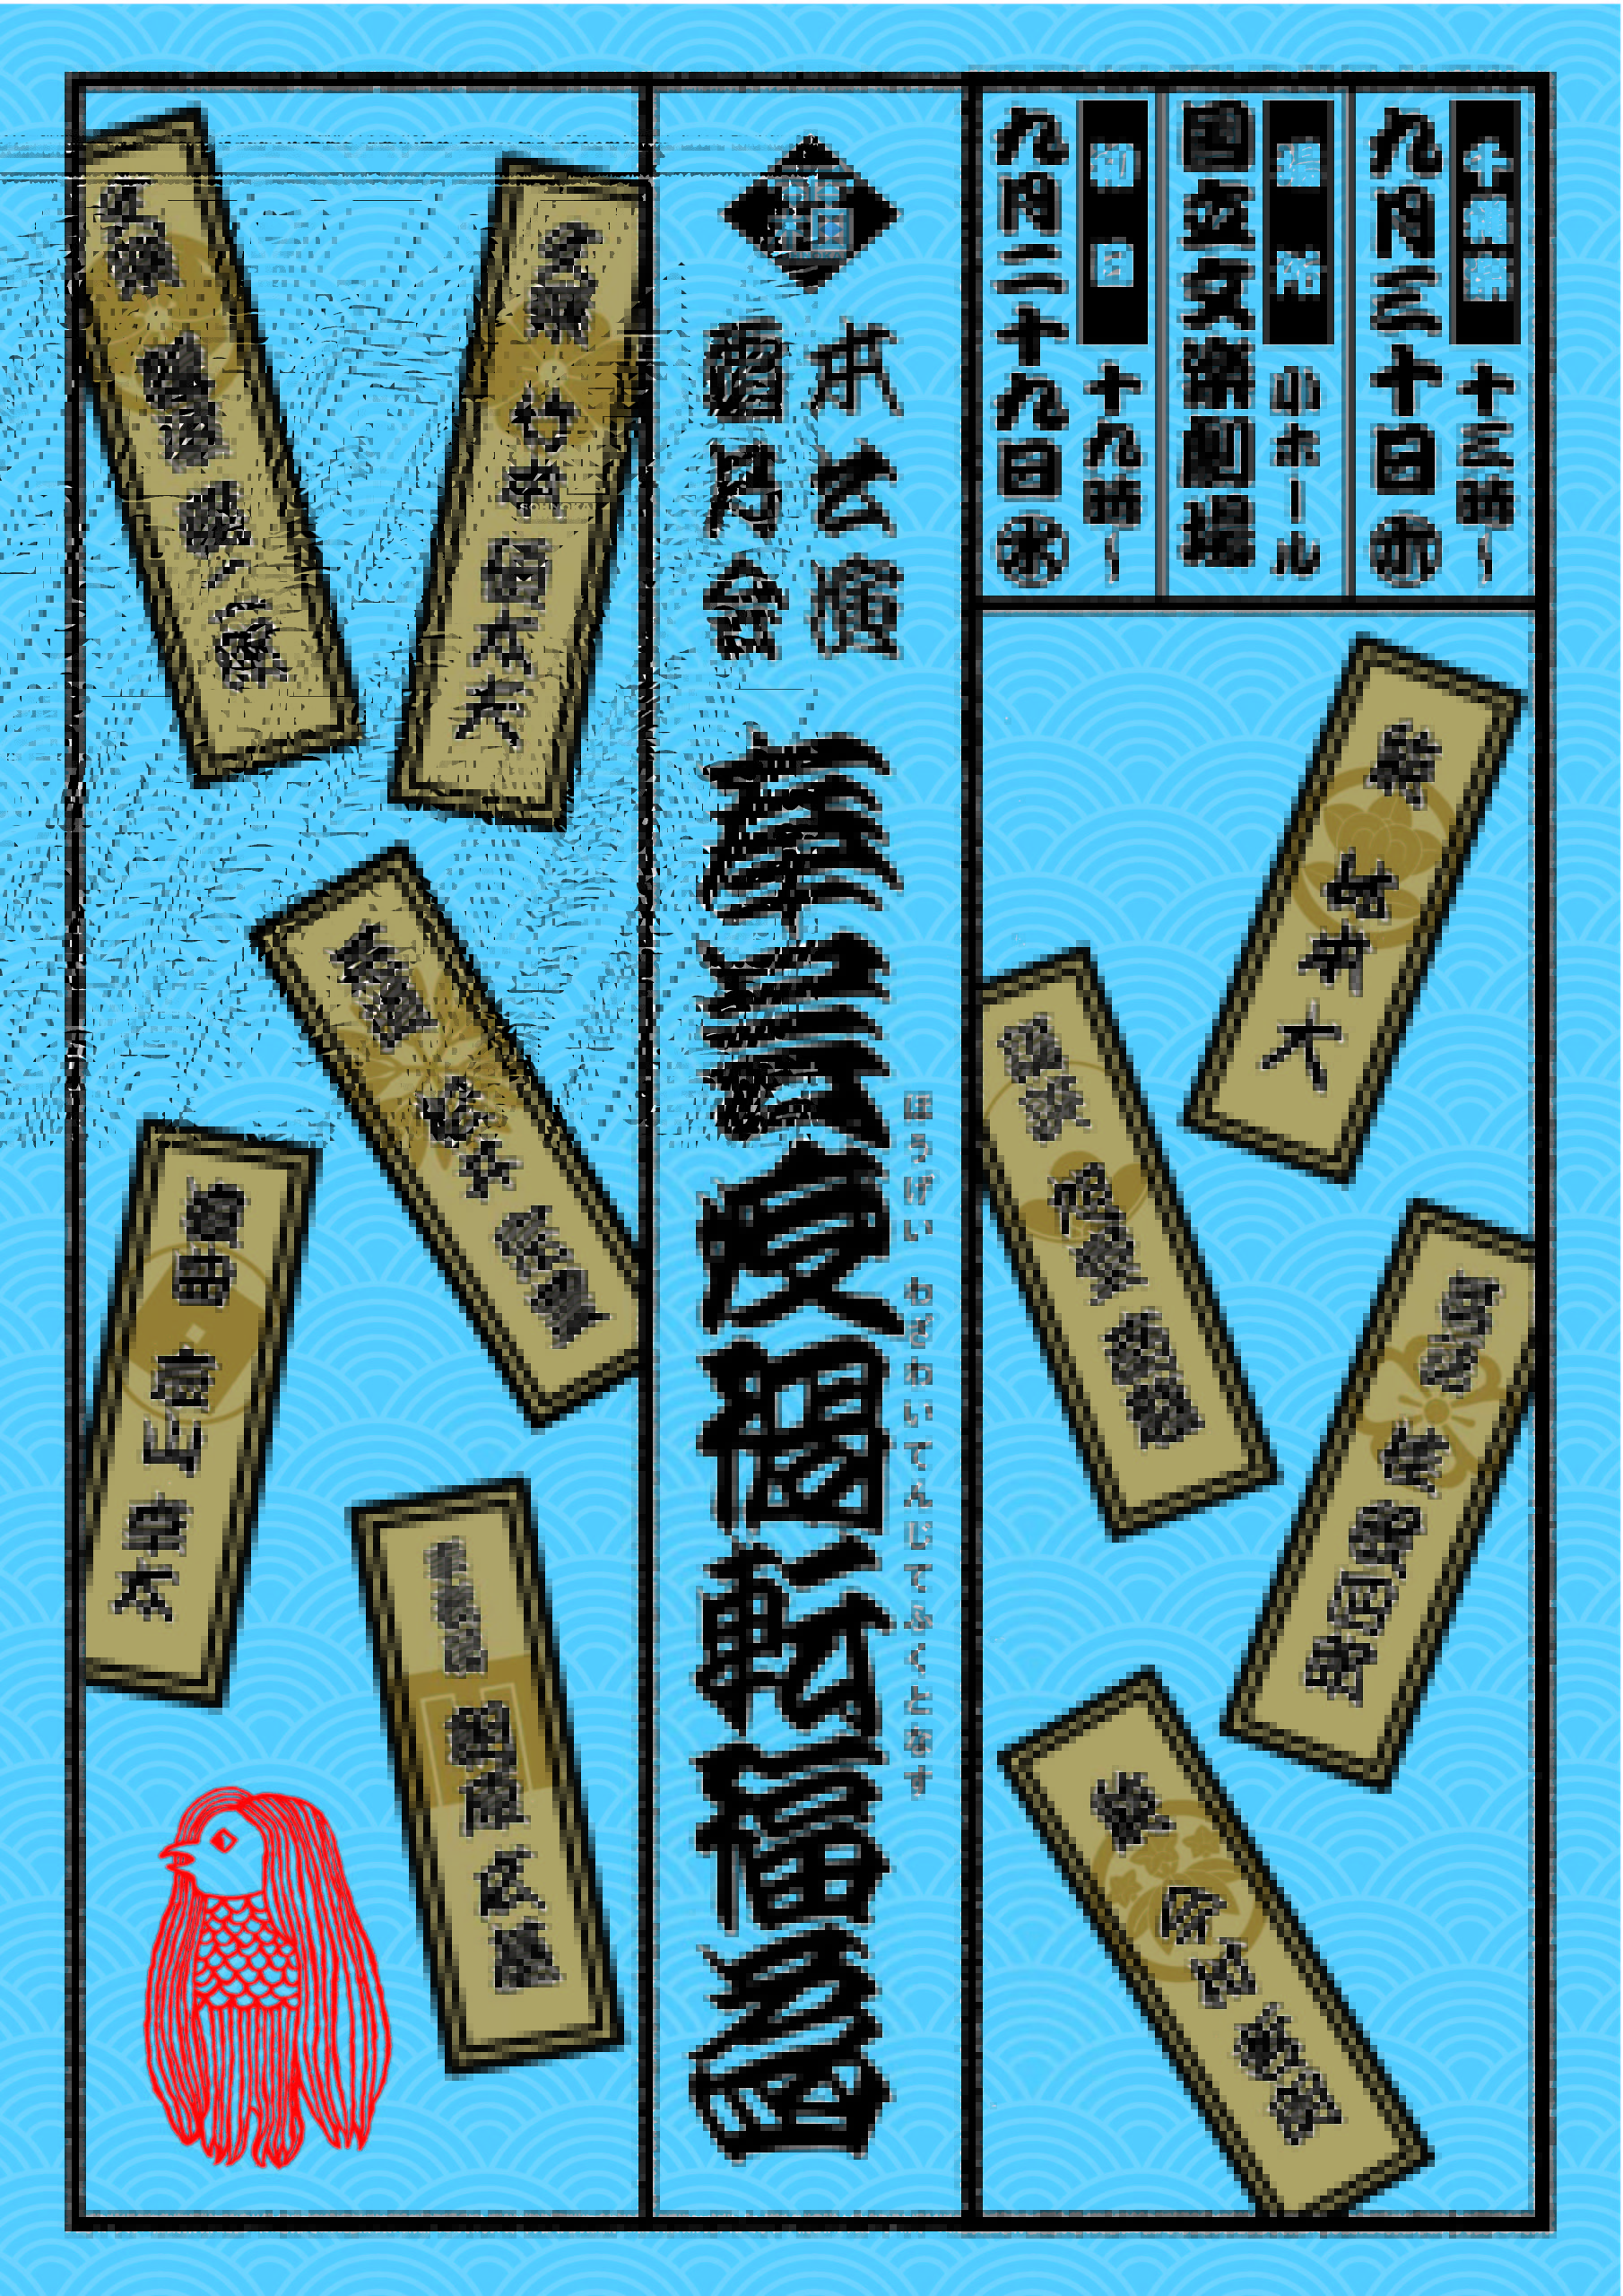 霜乃会本公演「奉芸疫禍転福為」が、9月29・30日に大阪・国立文楽劇場